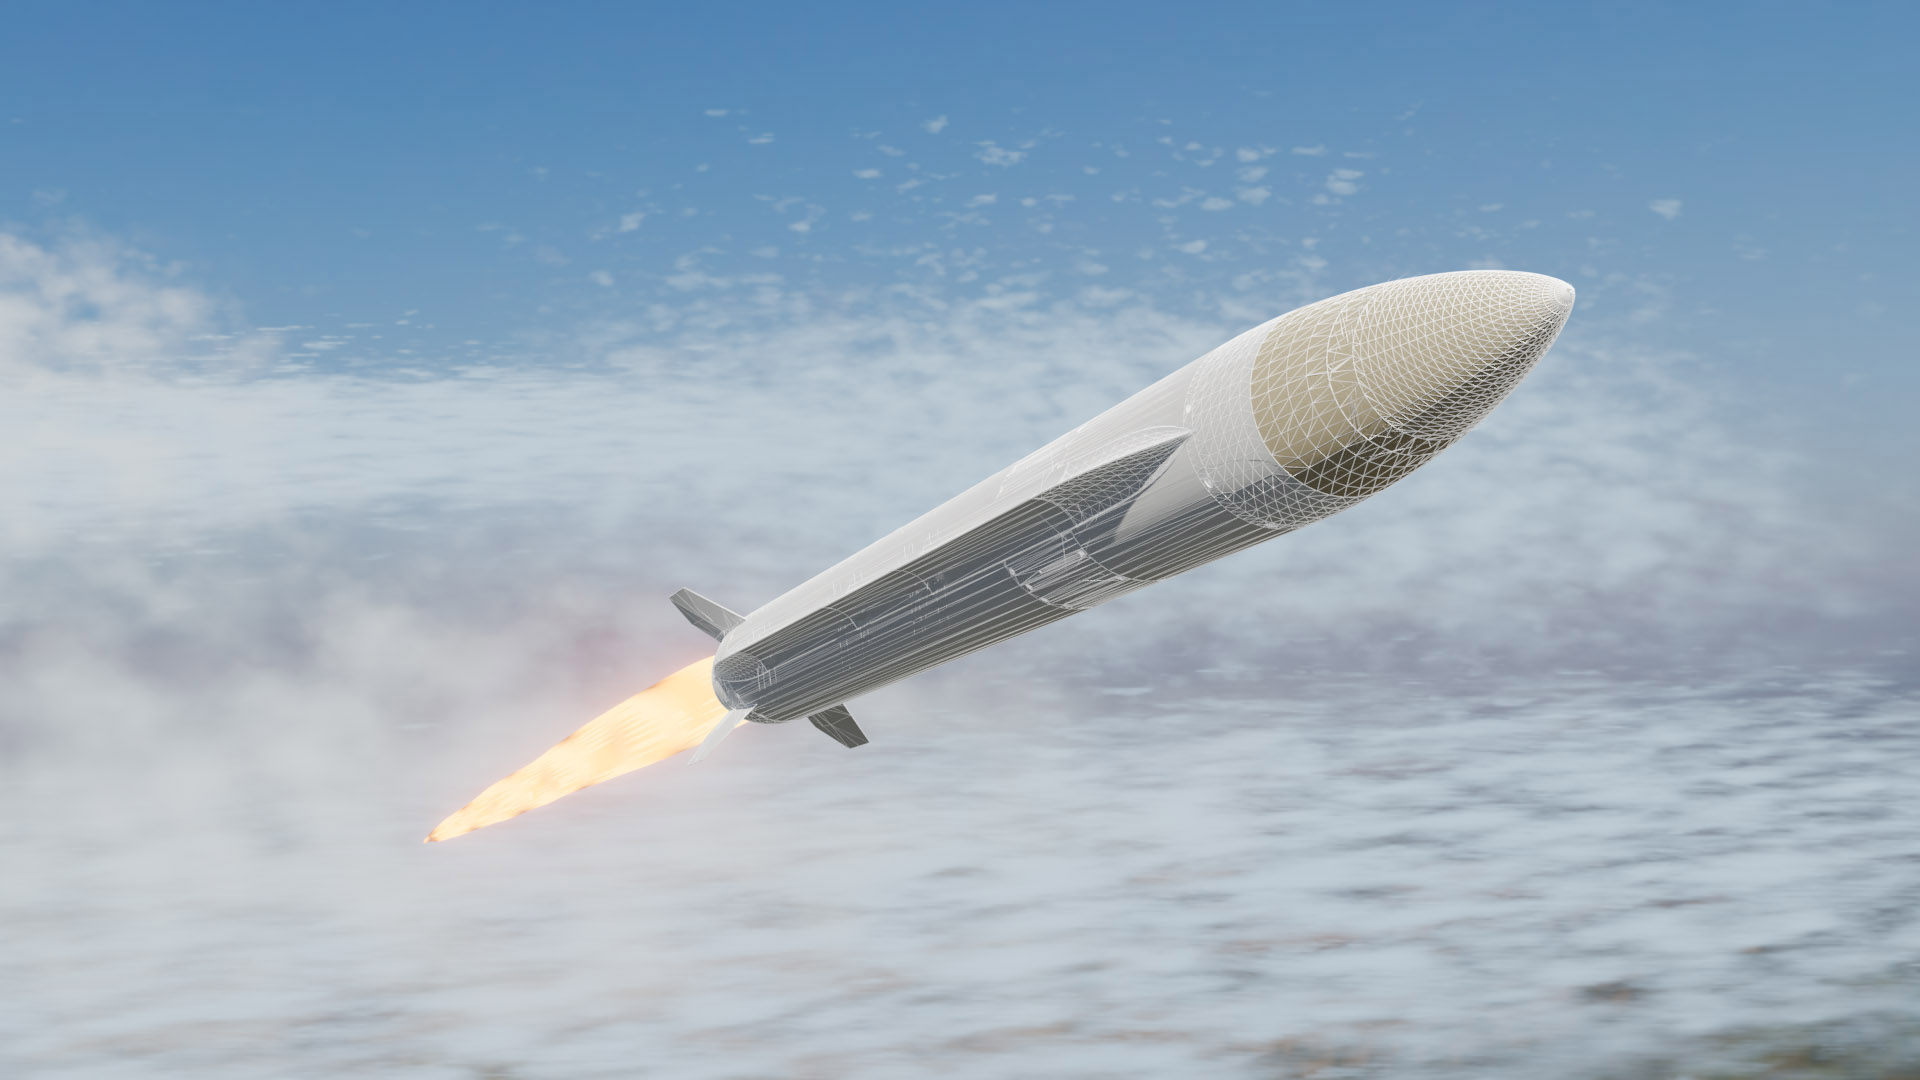 rendering of missile in flight